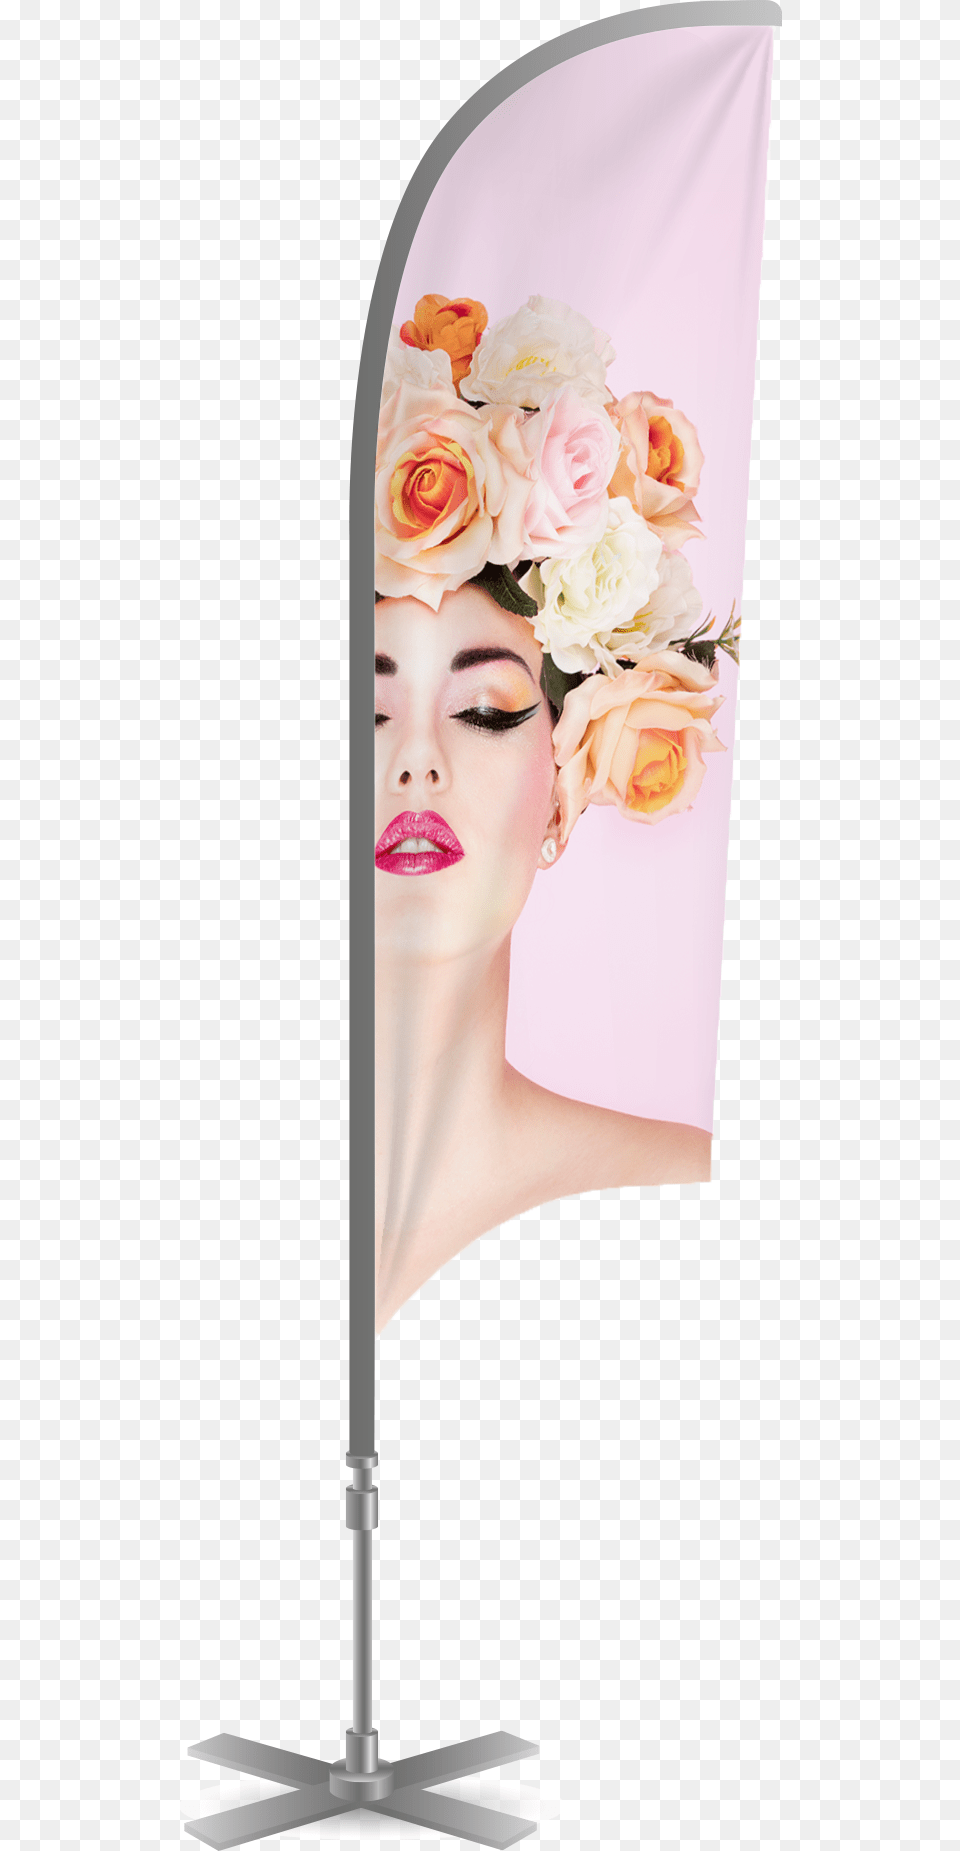 Transparent Lip Print, Flower Bouquet, Rose, Plant, Flower Free Png